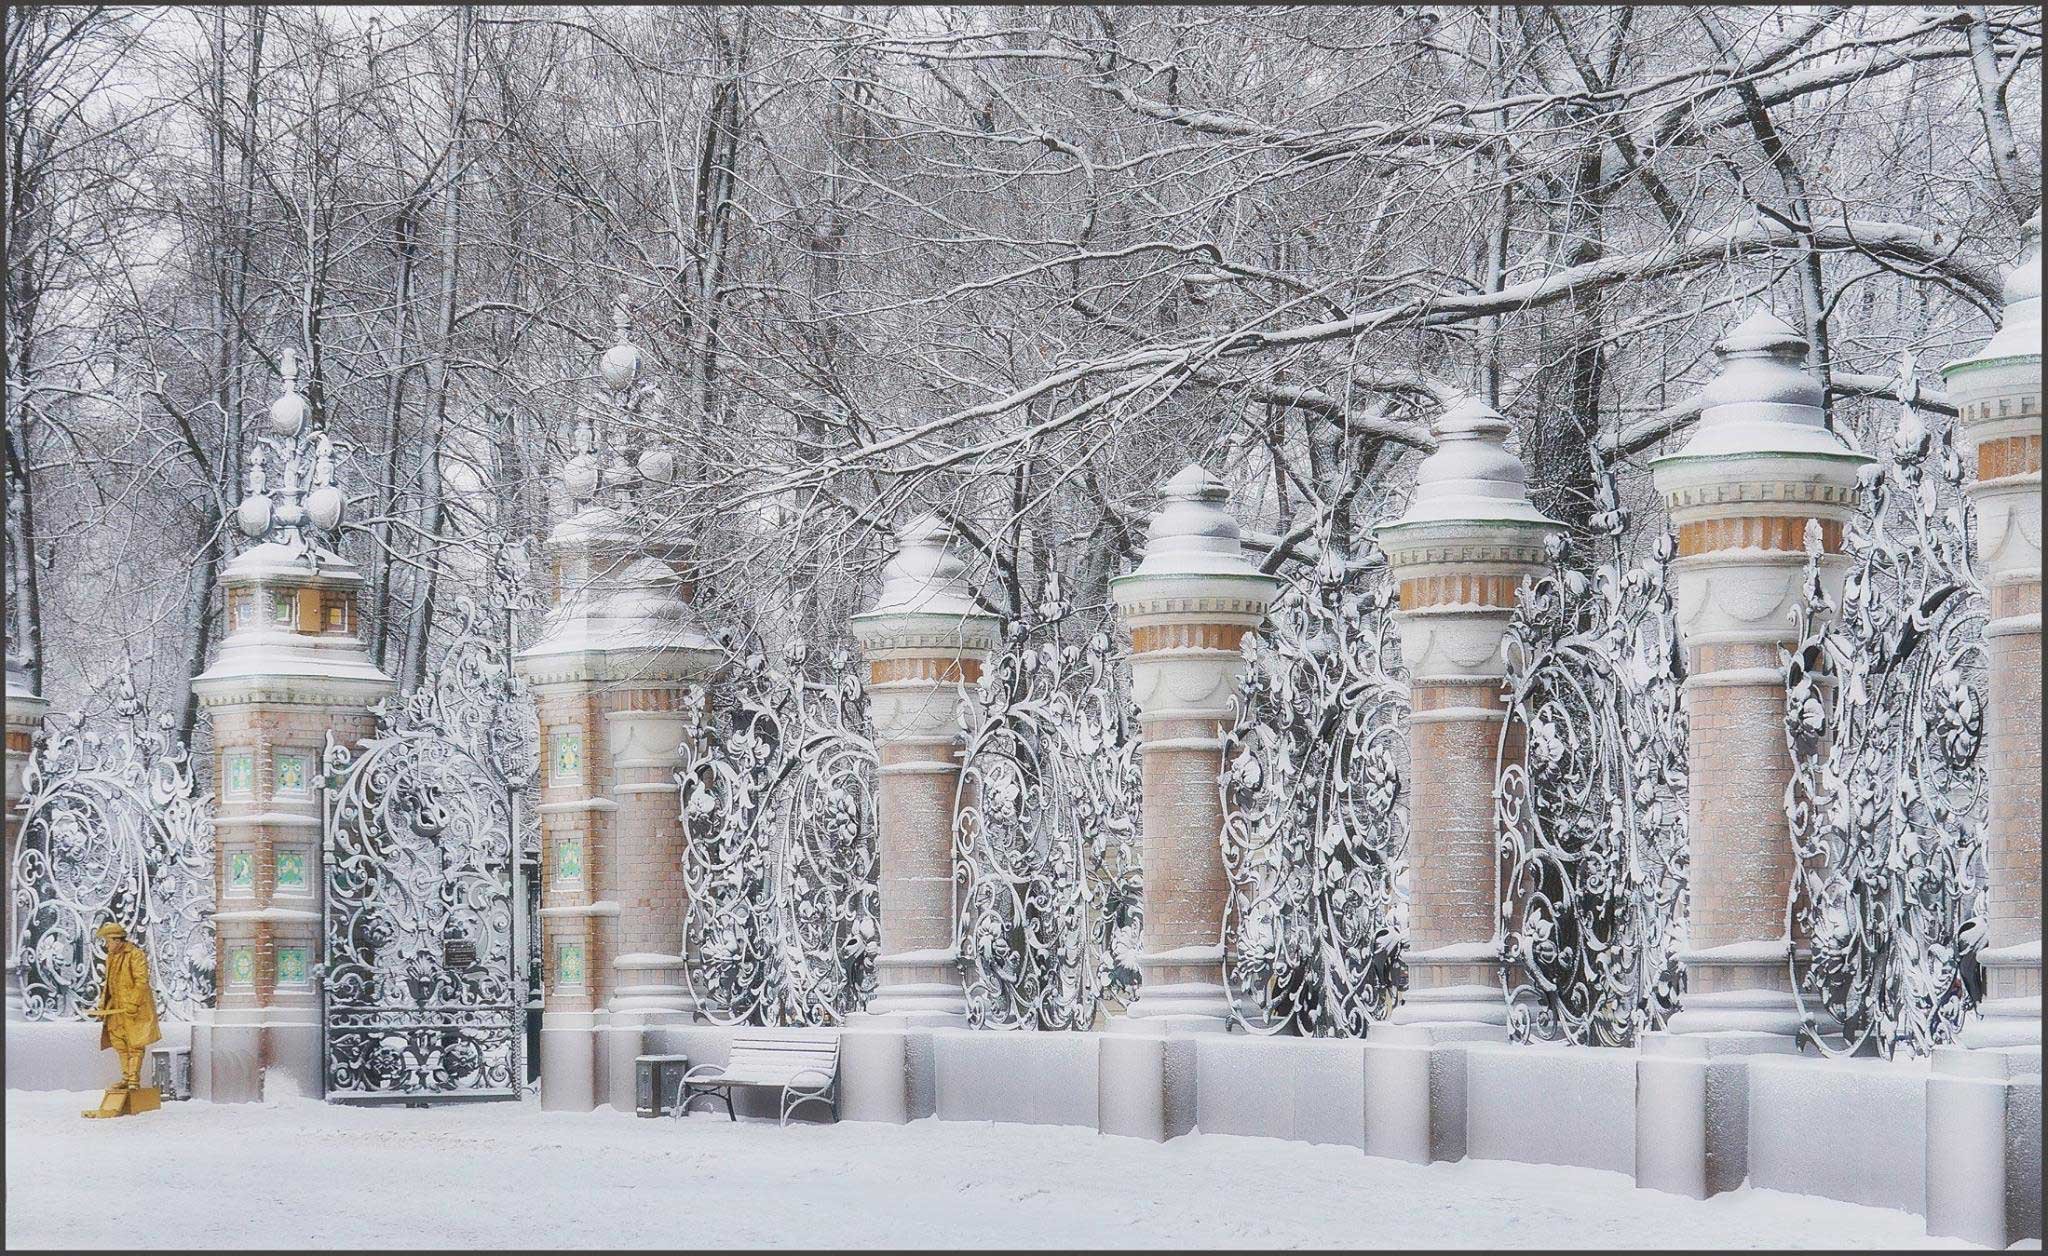 фото михайловского сада в петербурге